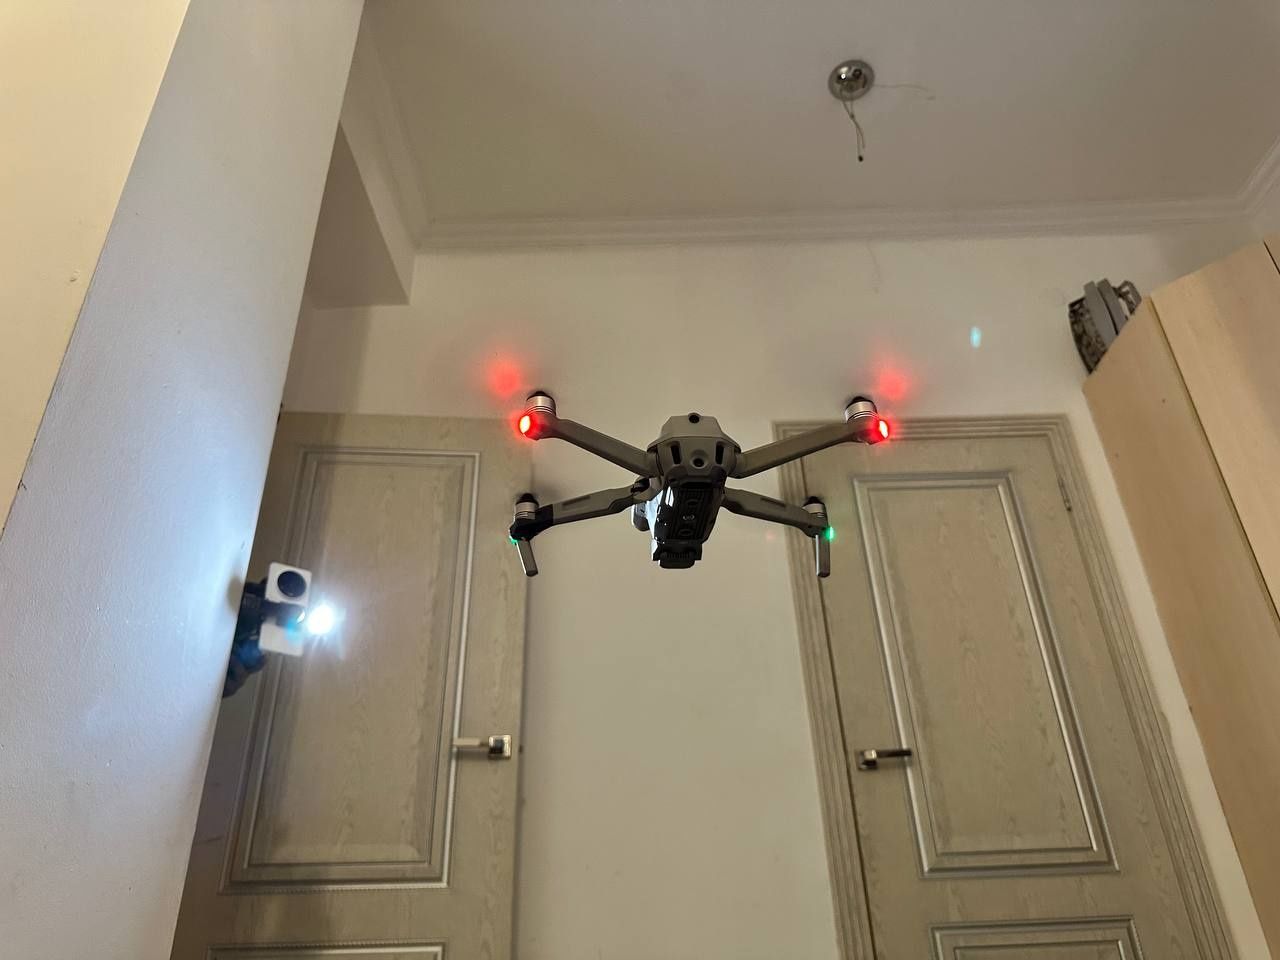 Дрон DJI Air 2S Fly More Combo cepый [drone, кводрокоптер]
квадрокопте